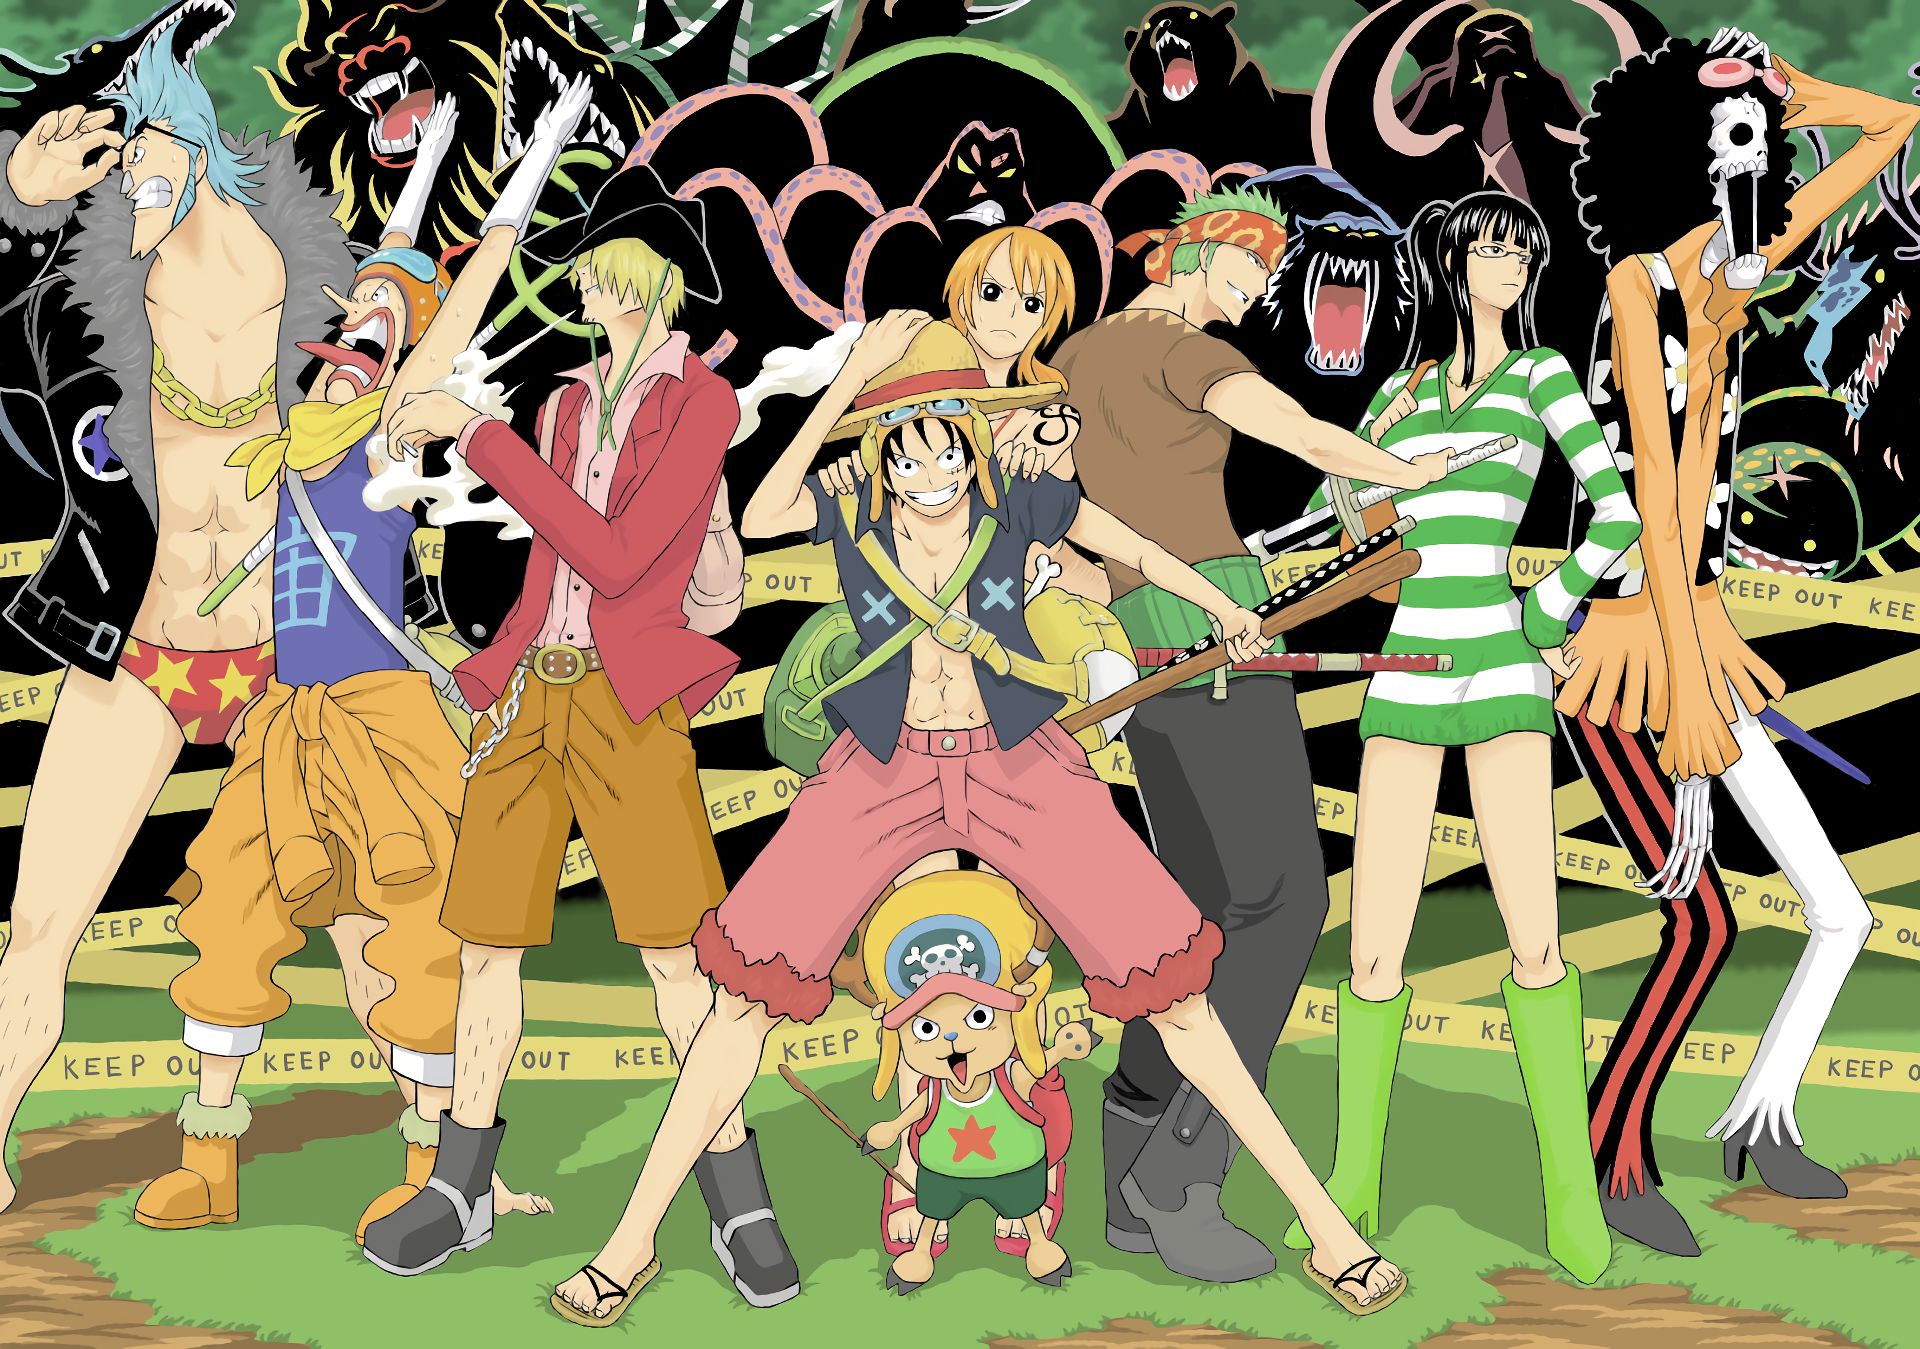 Download mobile wallpaper Anime, One Piece, Tony Tony Chopper, Usopp (One Piece), Roronoa Zoro, Monkey D Luffy, Nami (One Piece), Sanji (One Piece), Brook (One Piece), Franky (One Piece) for free.